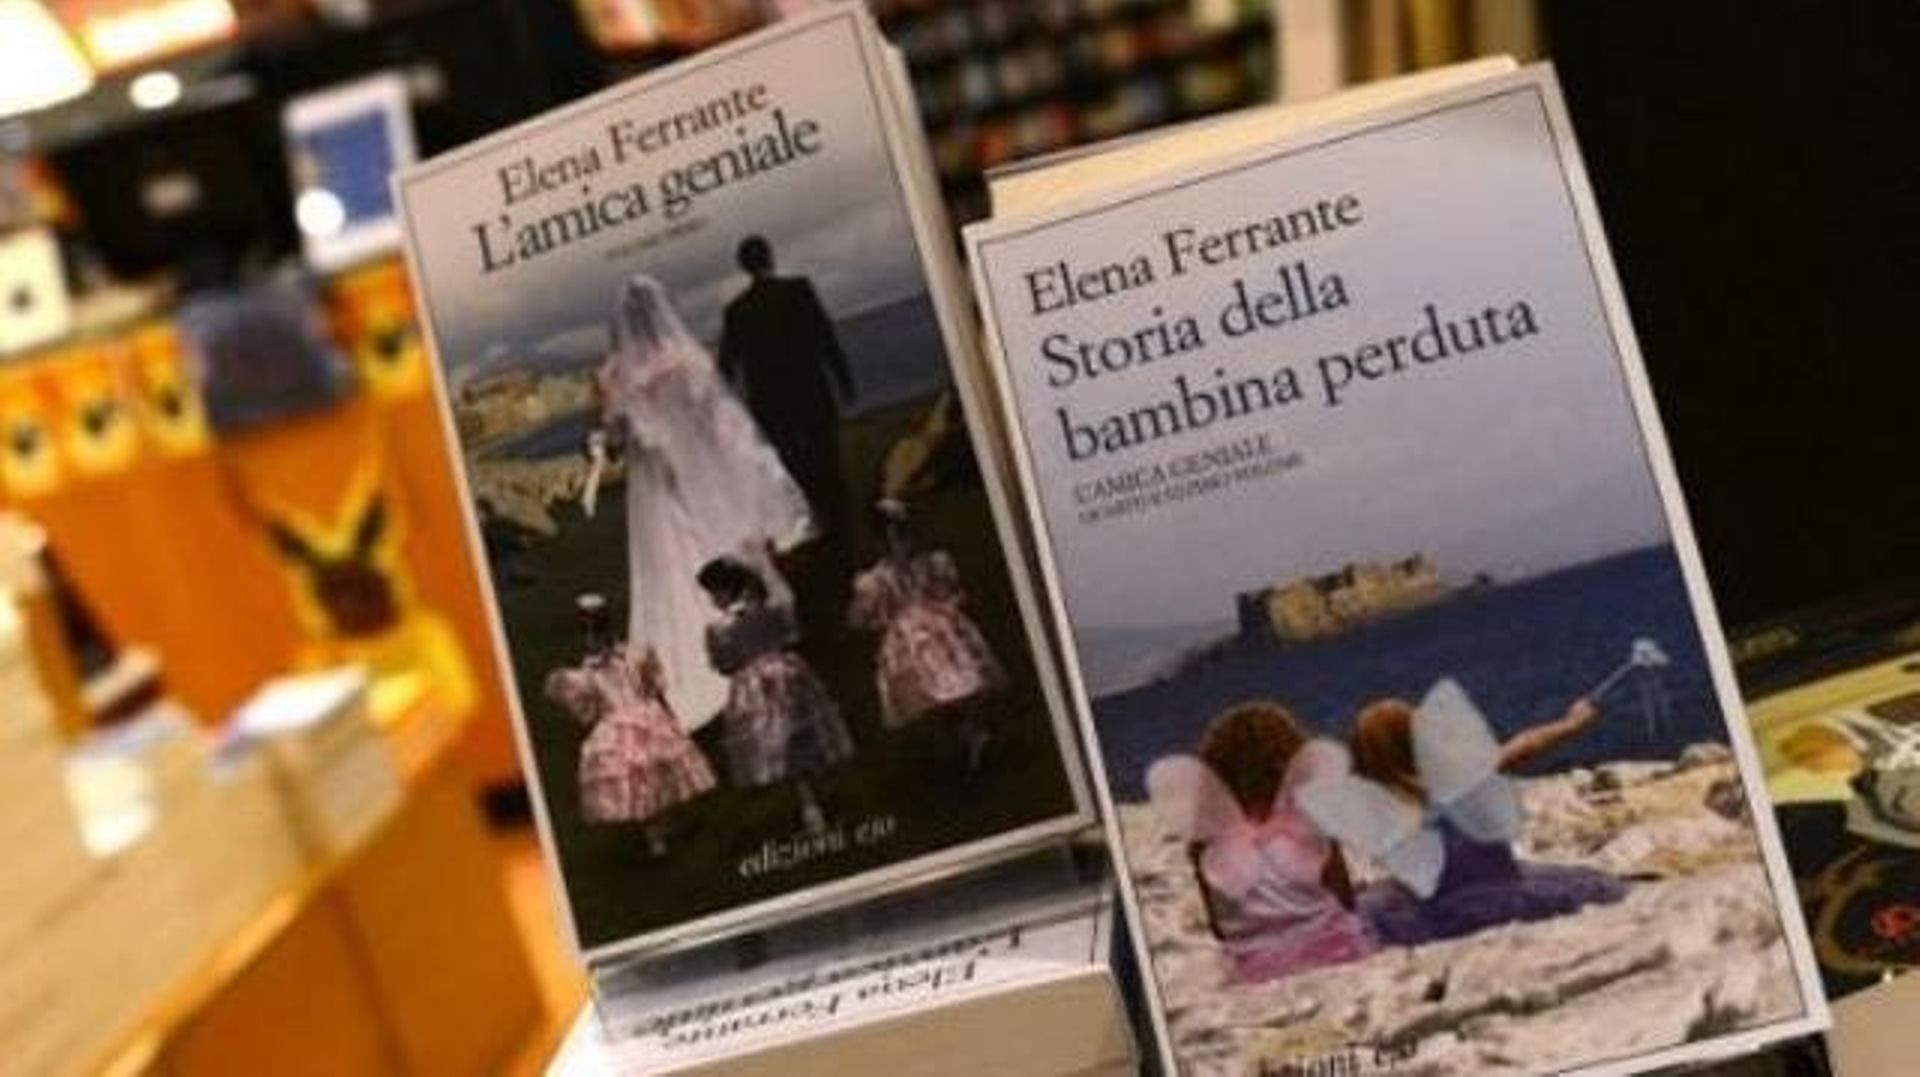 La mystérieuse auteure Elena Ferrante va publier un nouveau roman